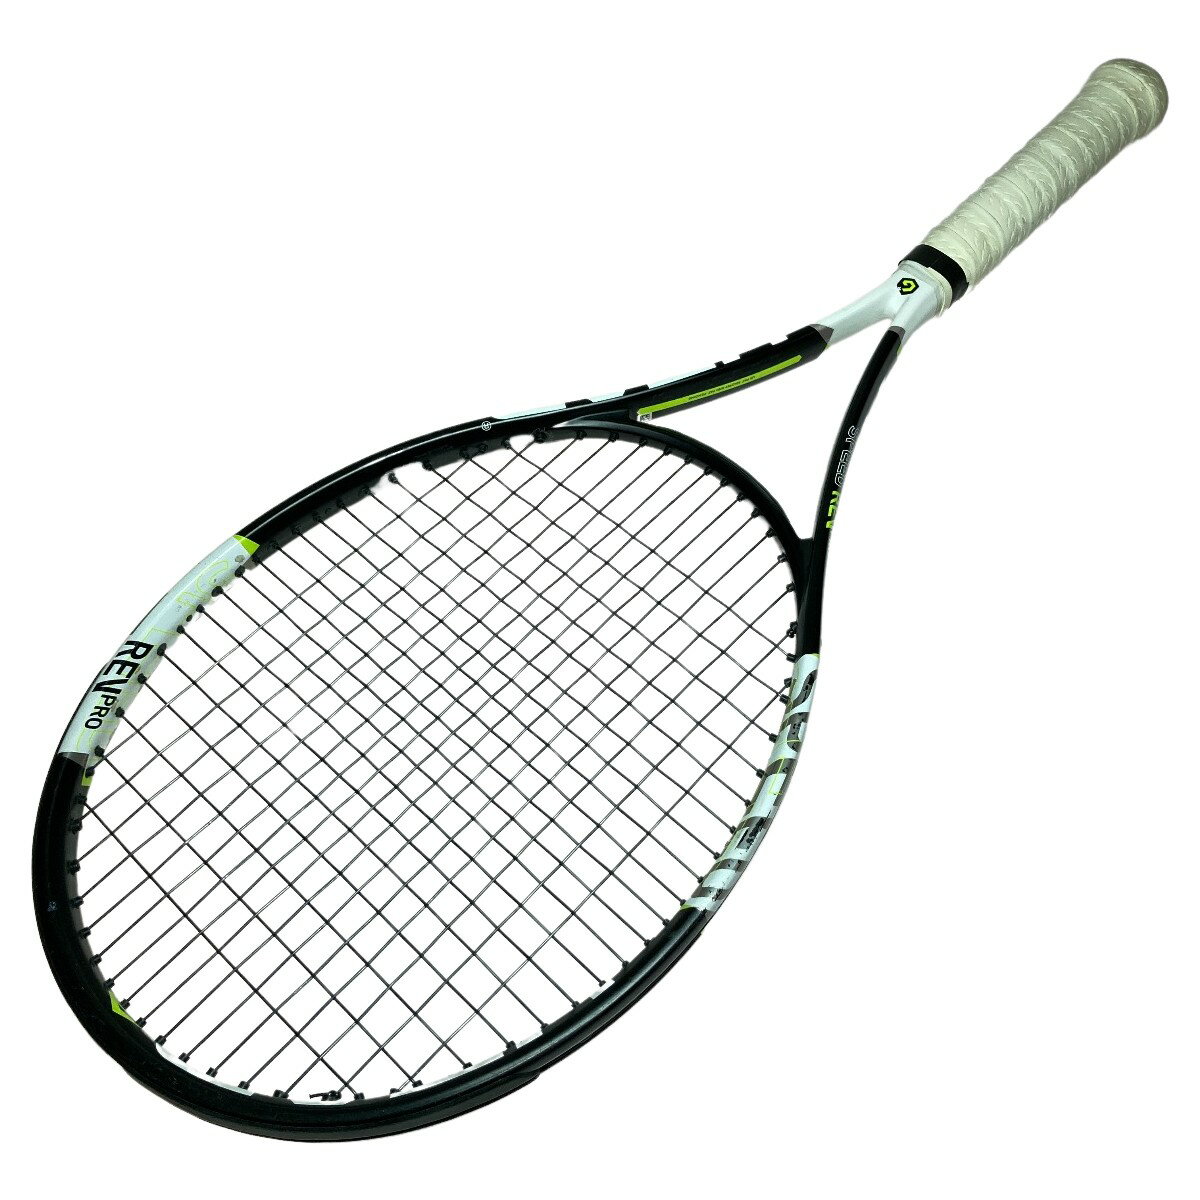 ◎◎【中古】HEAD ヘッド GRAPHENE XT SPEED REV PRO グラフィン 硬式テニスラケット G2 Cランク